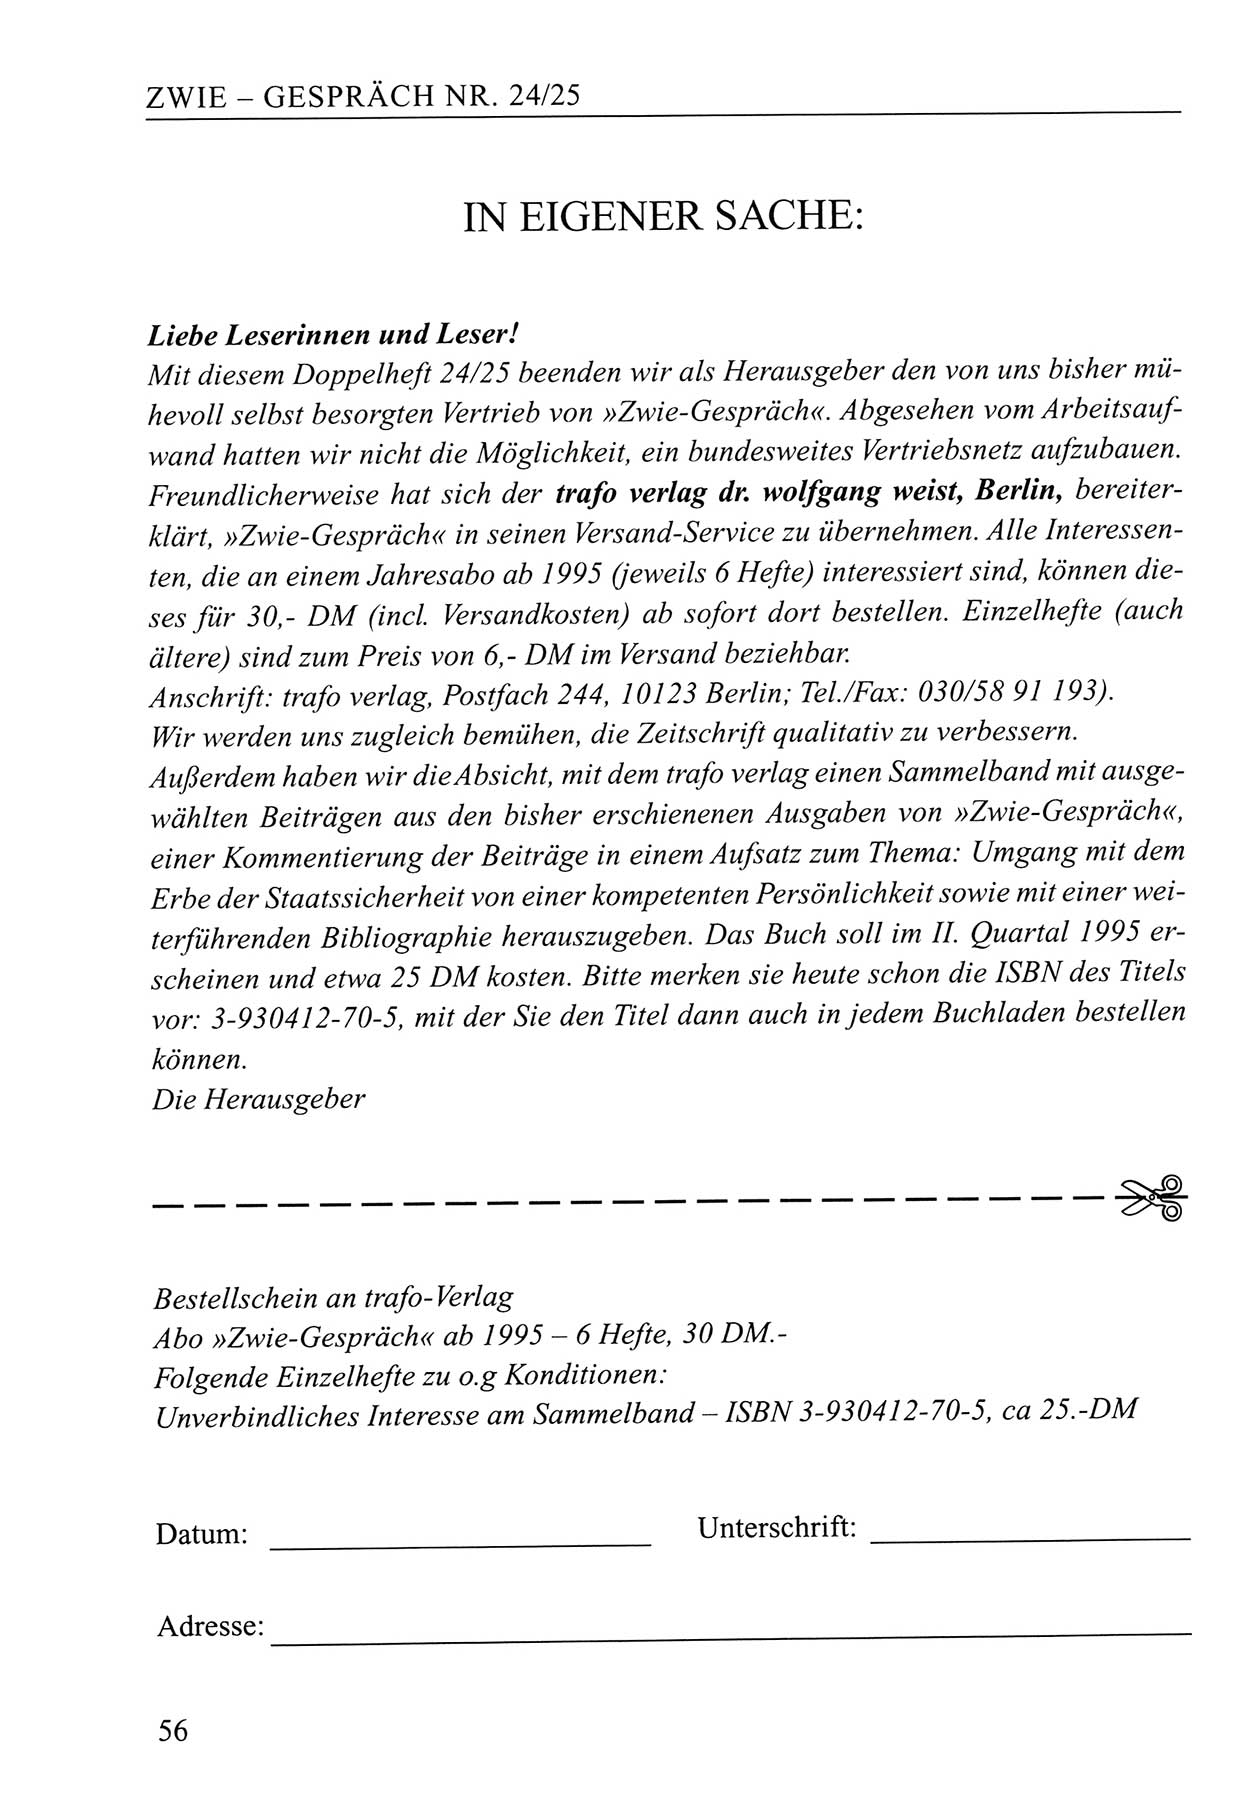 Zwie-Gespräch, Beiträge zum Umgang mit der Staatssicherheits-Vergangenheit [Deutsche Demokratische Republik (DDR)], Ausgabe Nr. 24/25, Berlin 1994, Seite 56 (Zwie-Gespr. Ausg. 24/25 1994, S. 56)